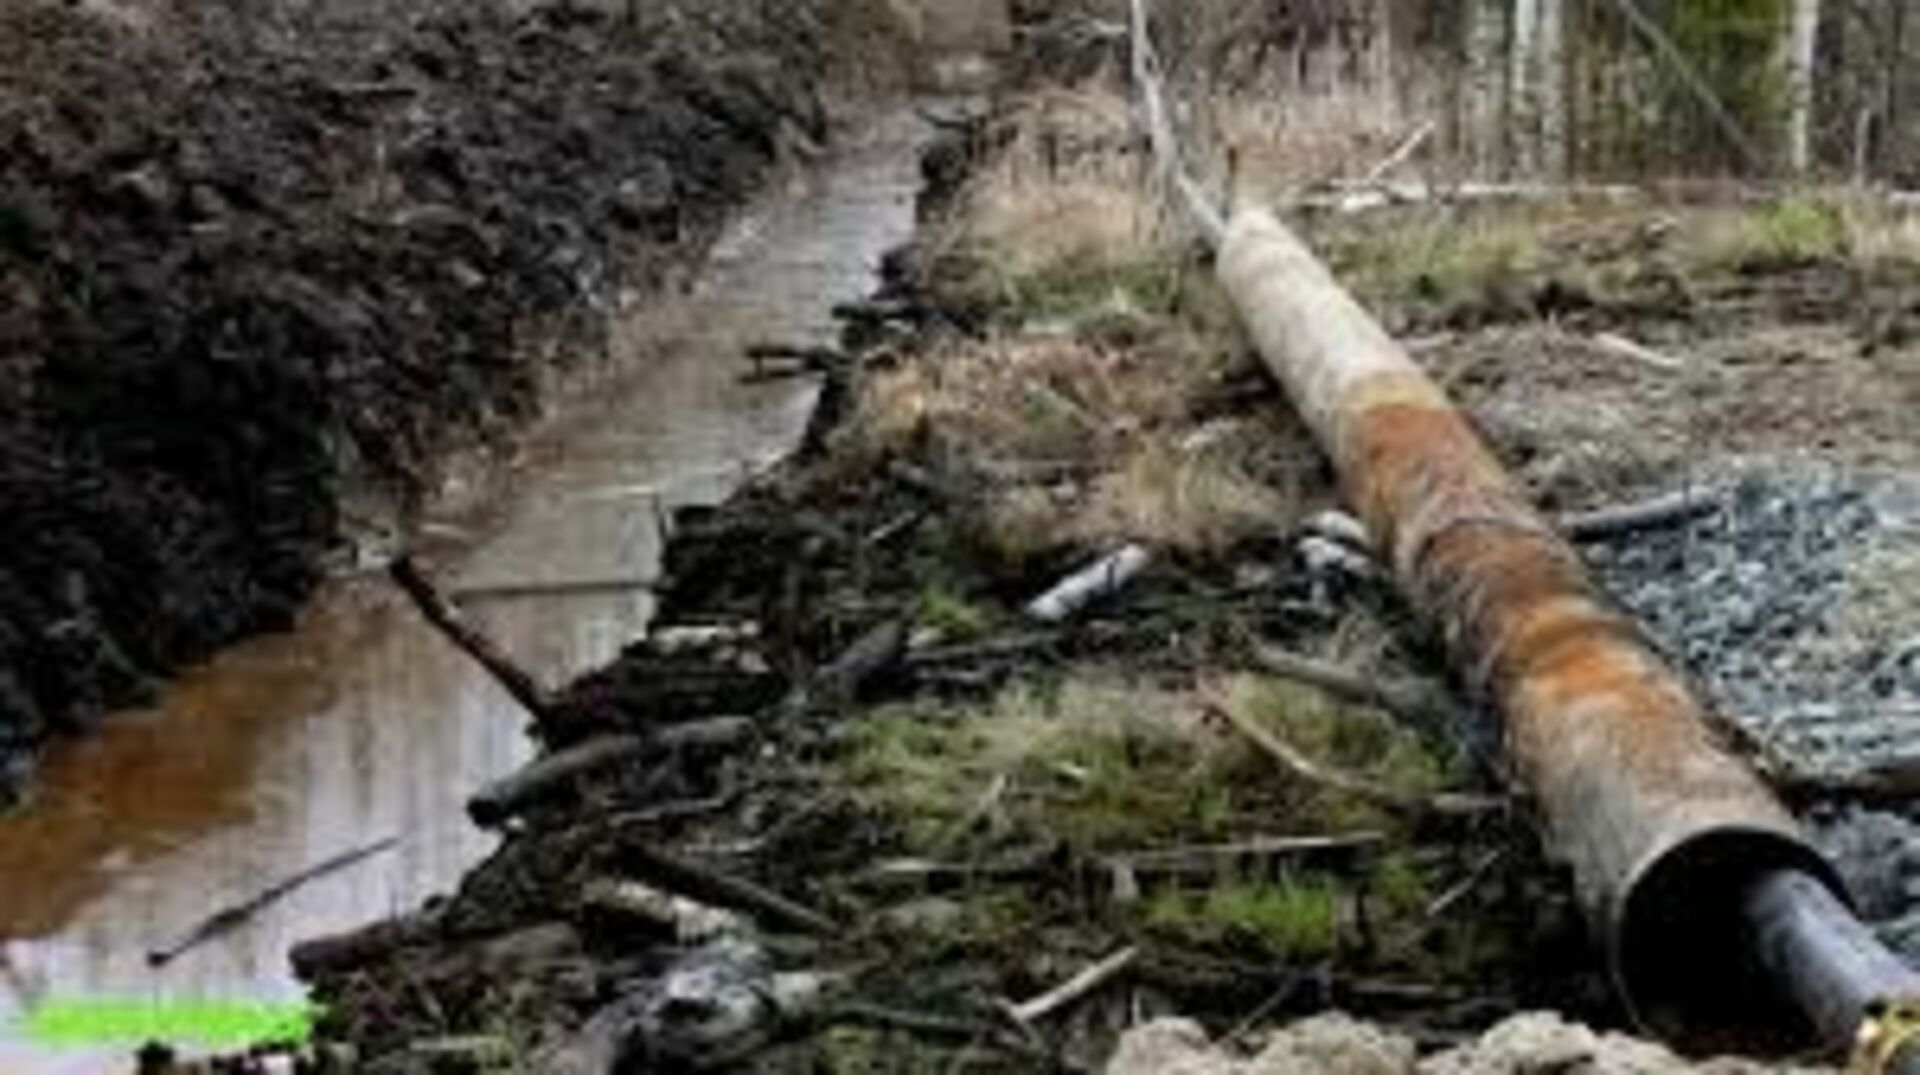 Сосна утонет в нефти. Разлив нефти трубопровод. Разливы нефти ХМАО Югра. Трубопровод в лесу. Разлив нефтепродуктов на почву.